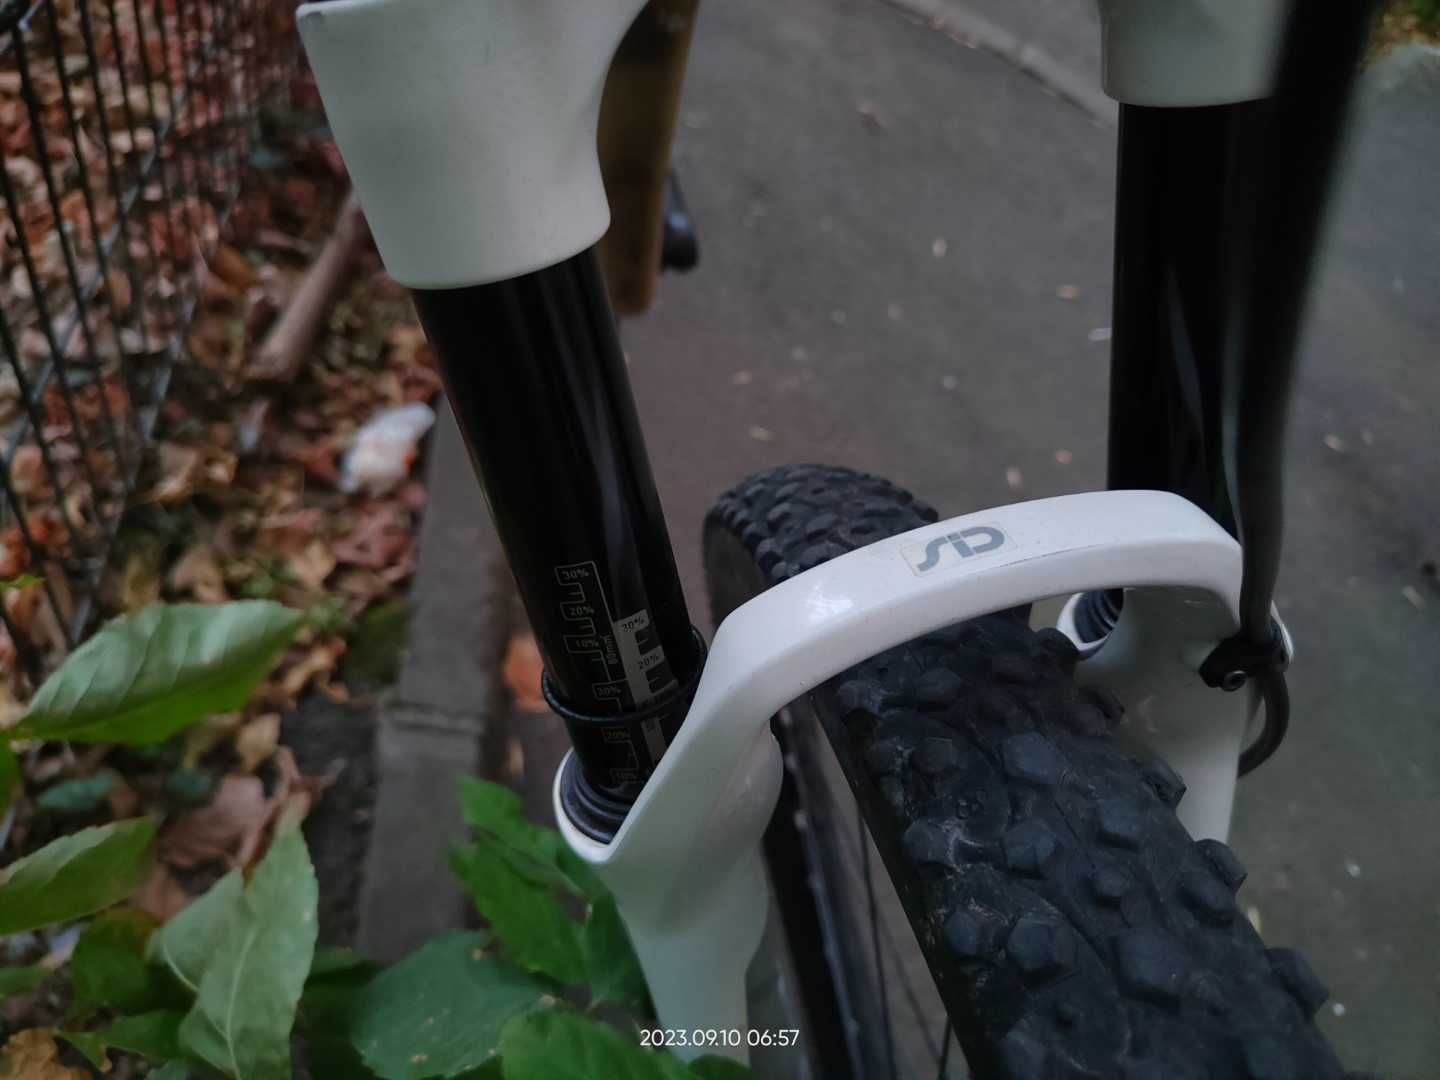 Bicicleta MTB XC full suspension carbon 27.5"